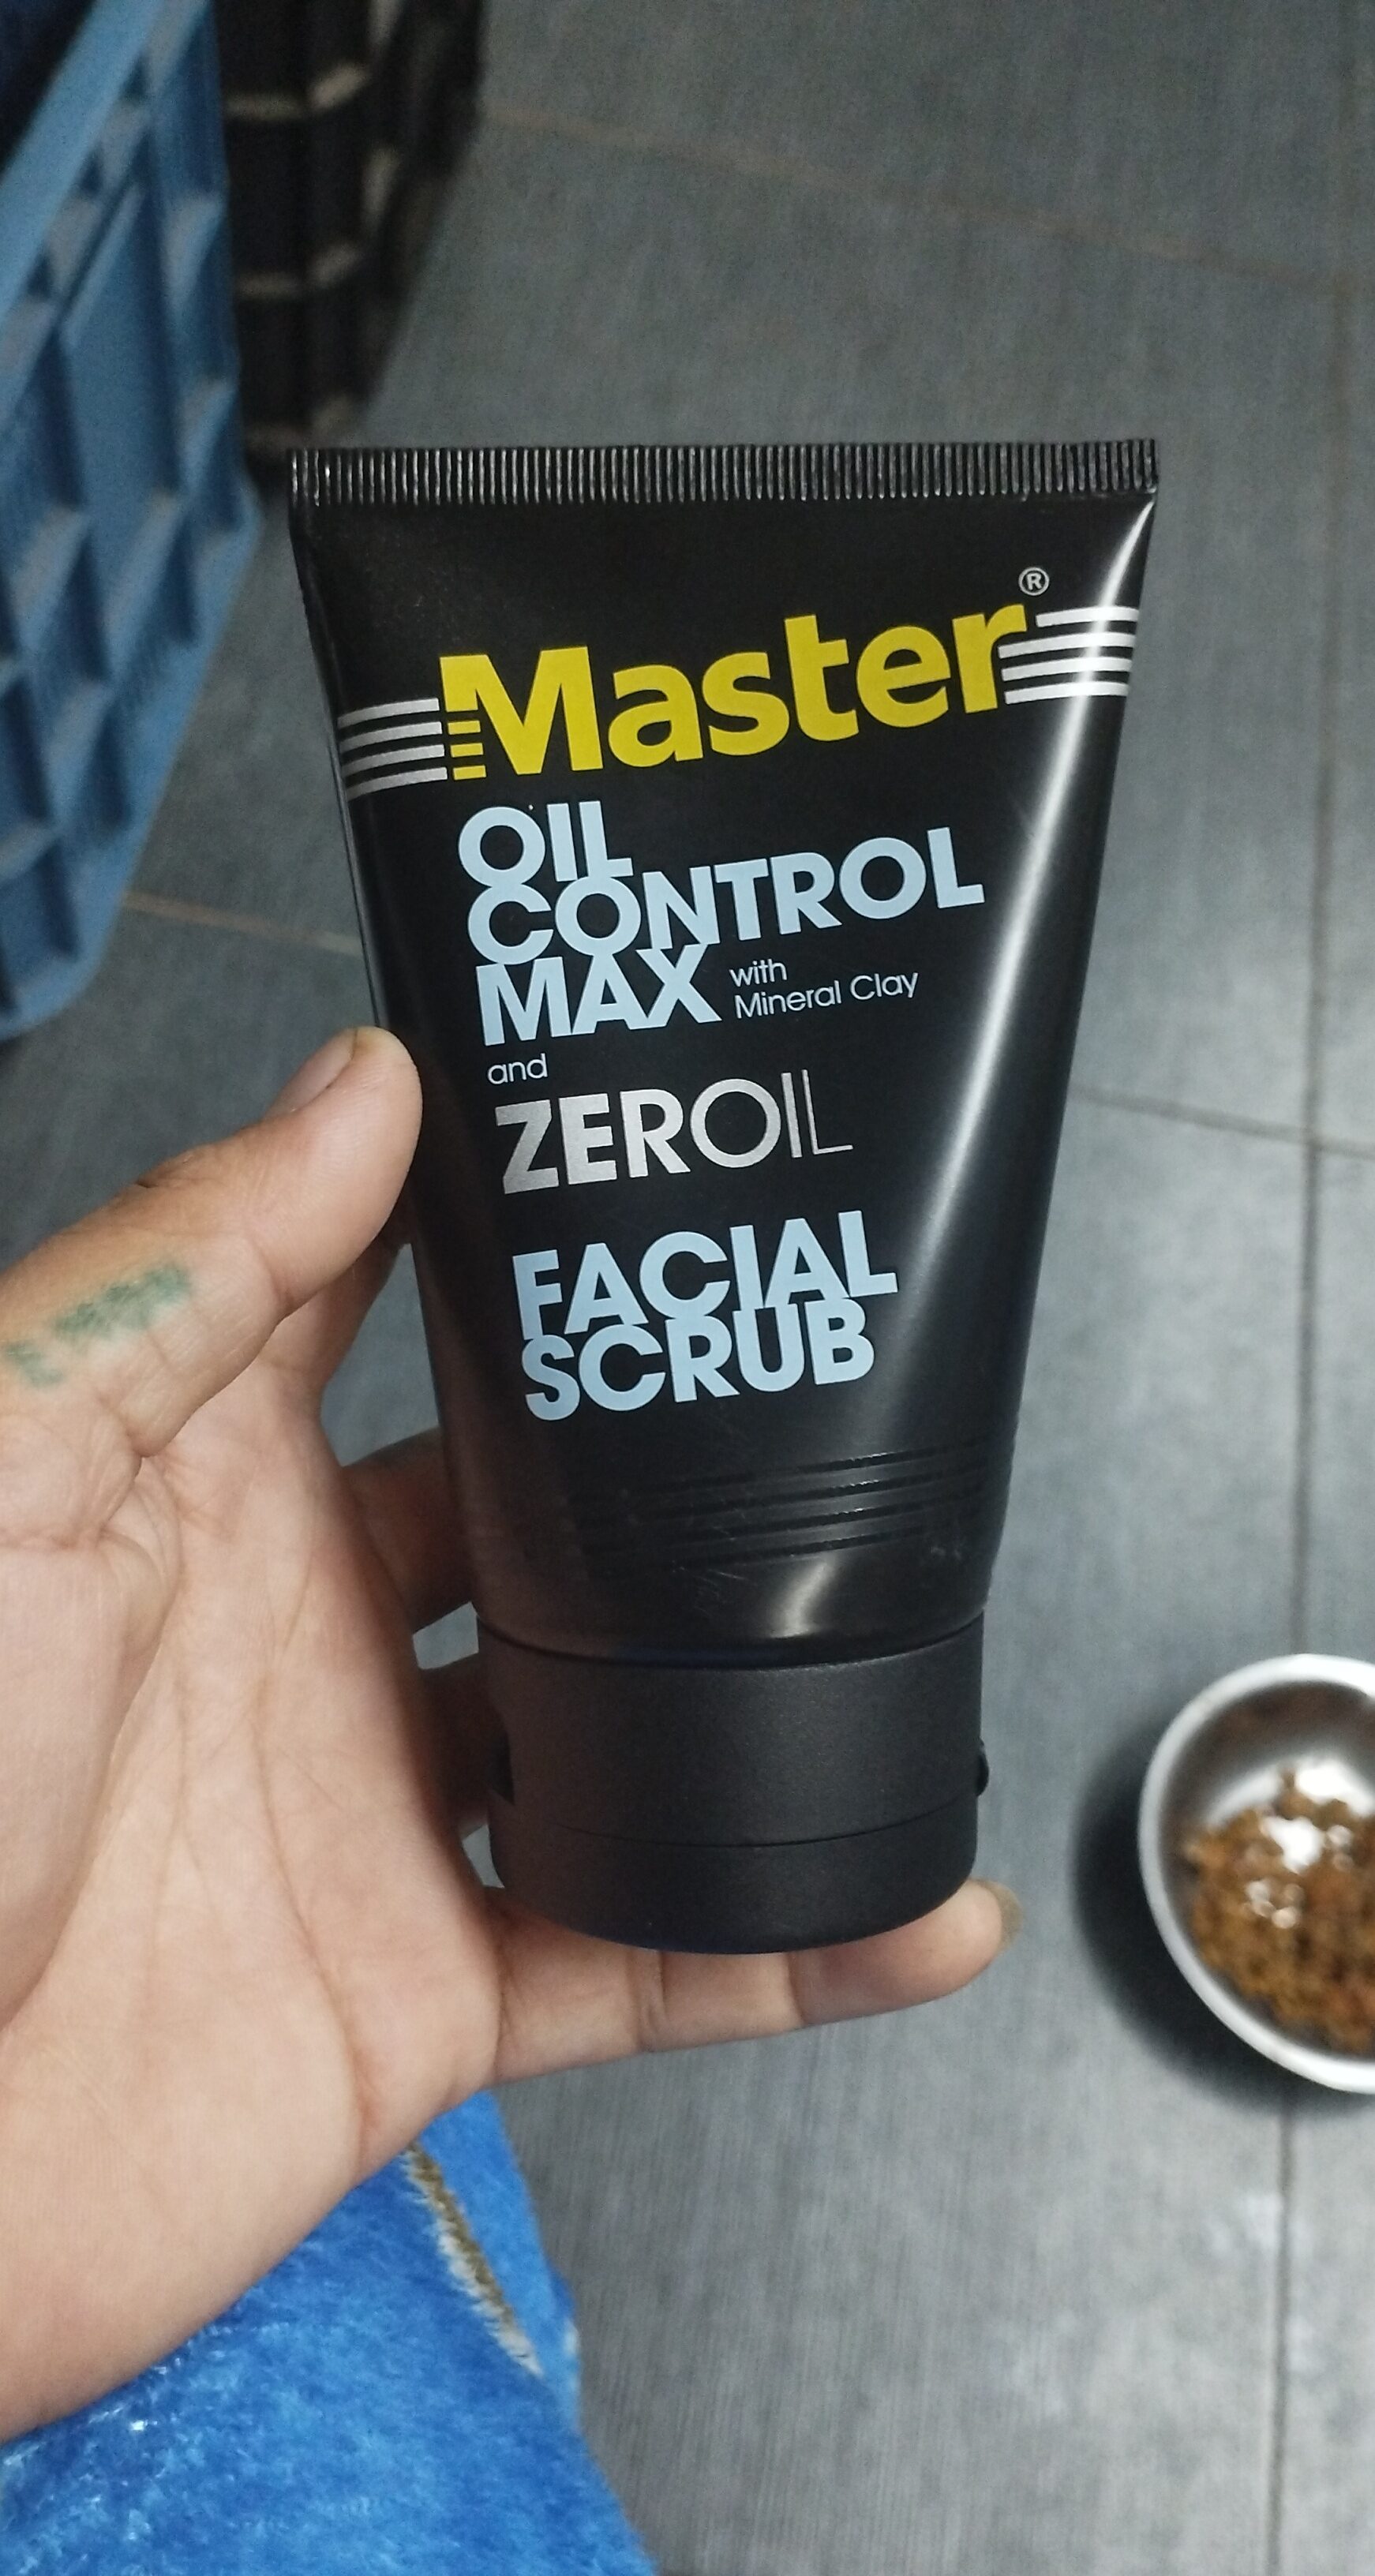 Master oil control max - Продукт - en